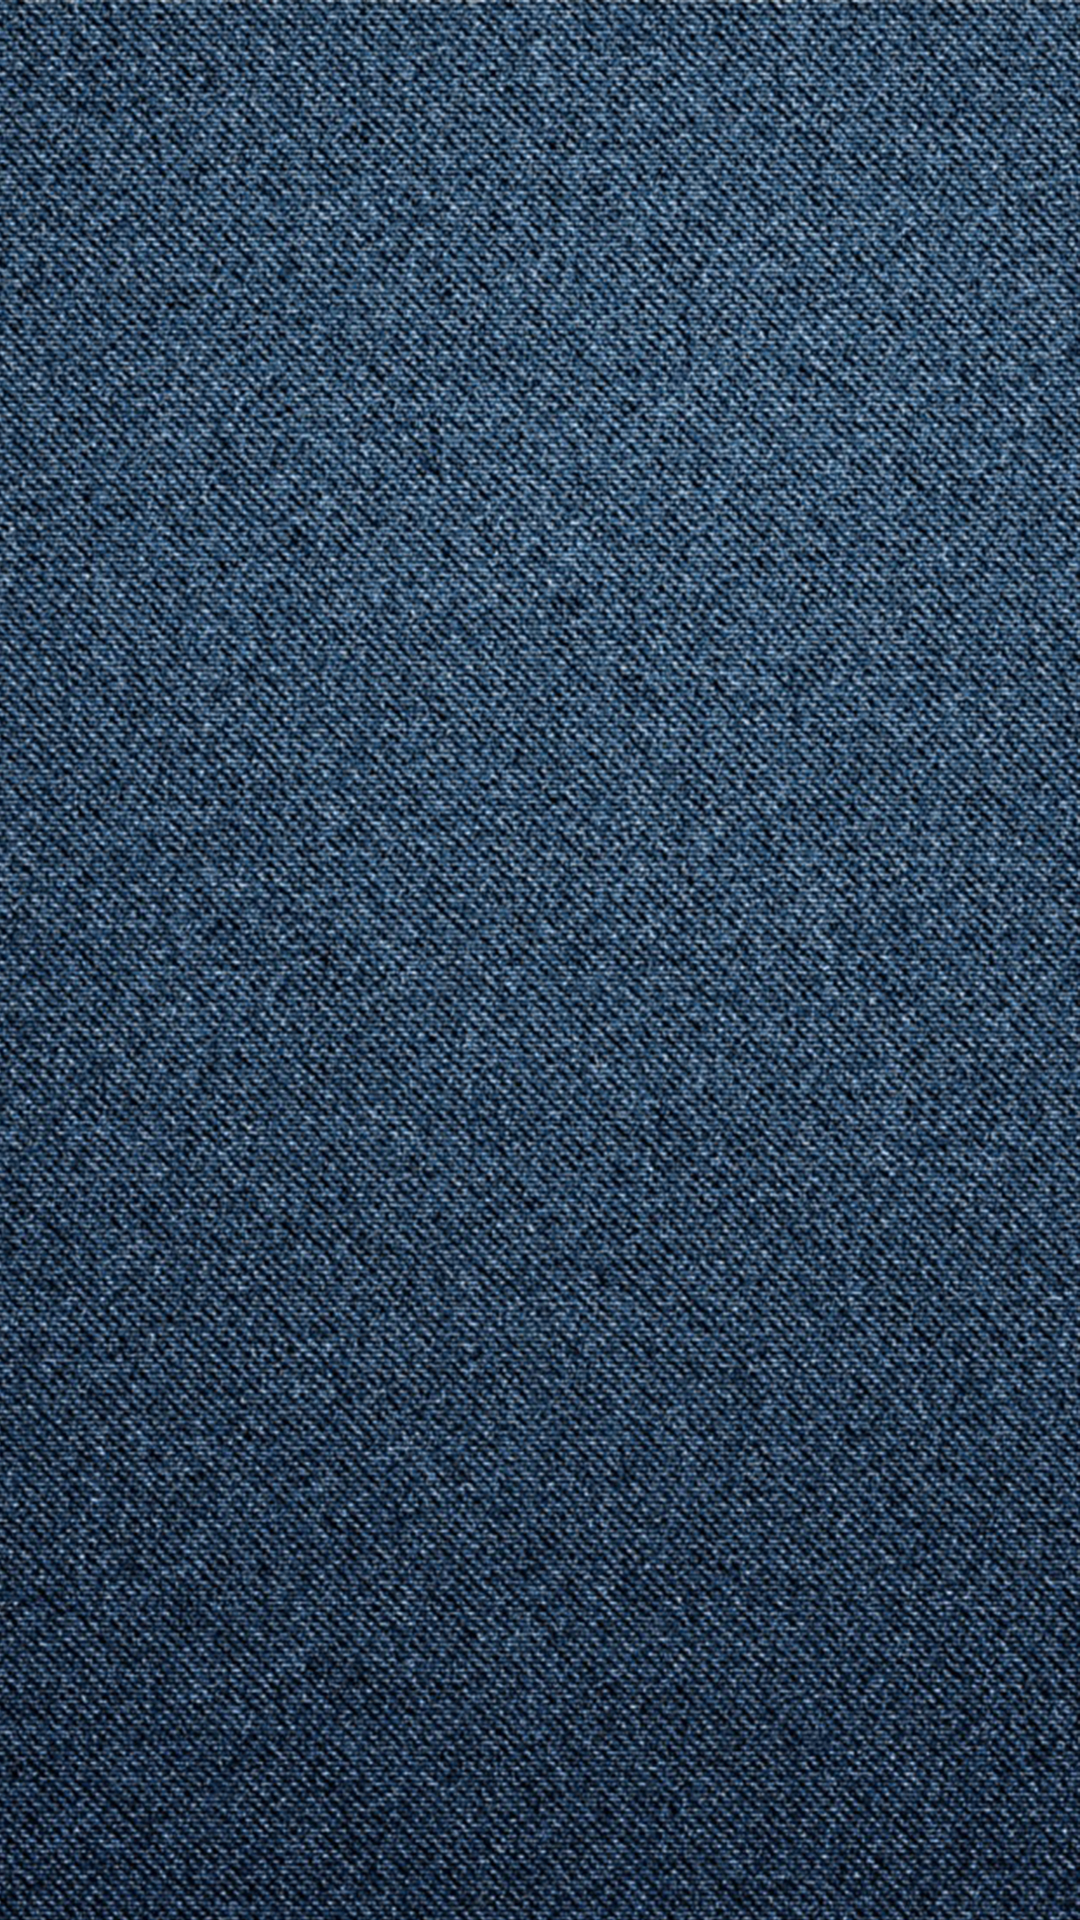 fondo de pantalla de blue jeans,azul,negro,azul cobalto,agua,turquesa